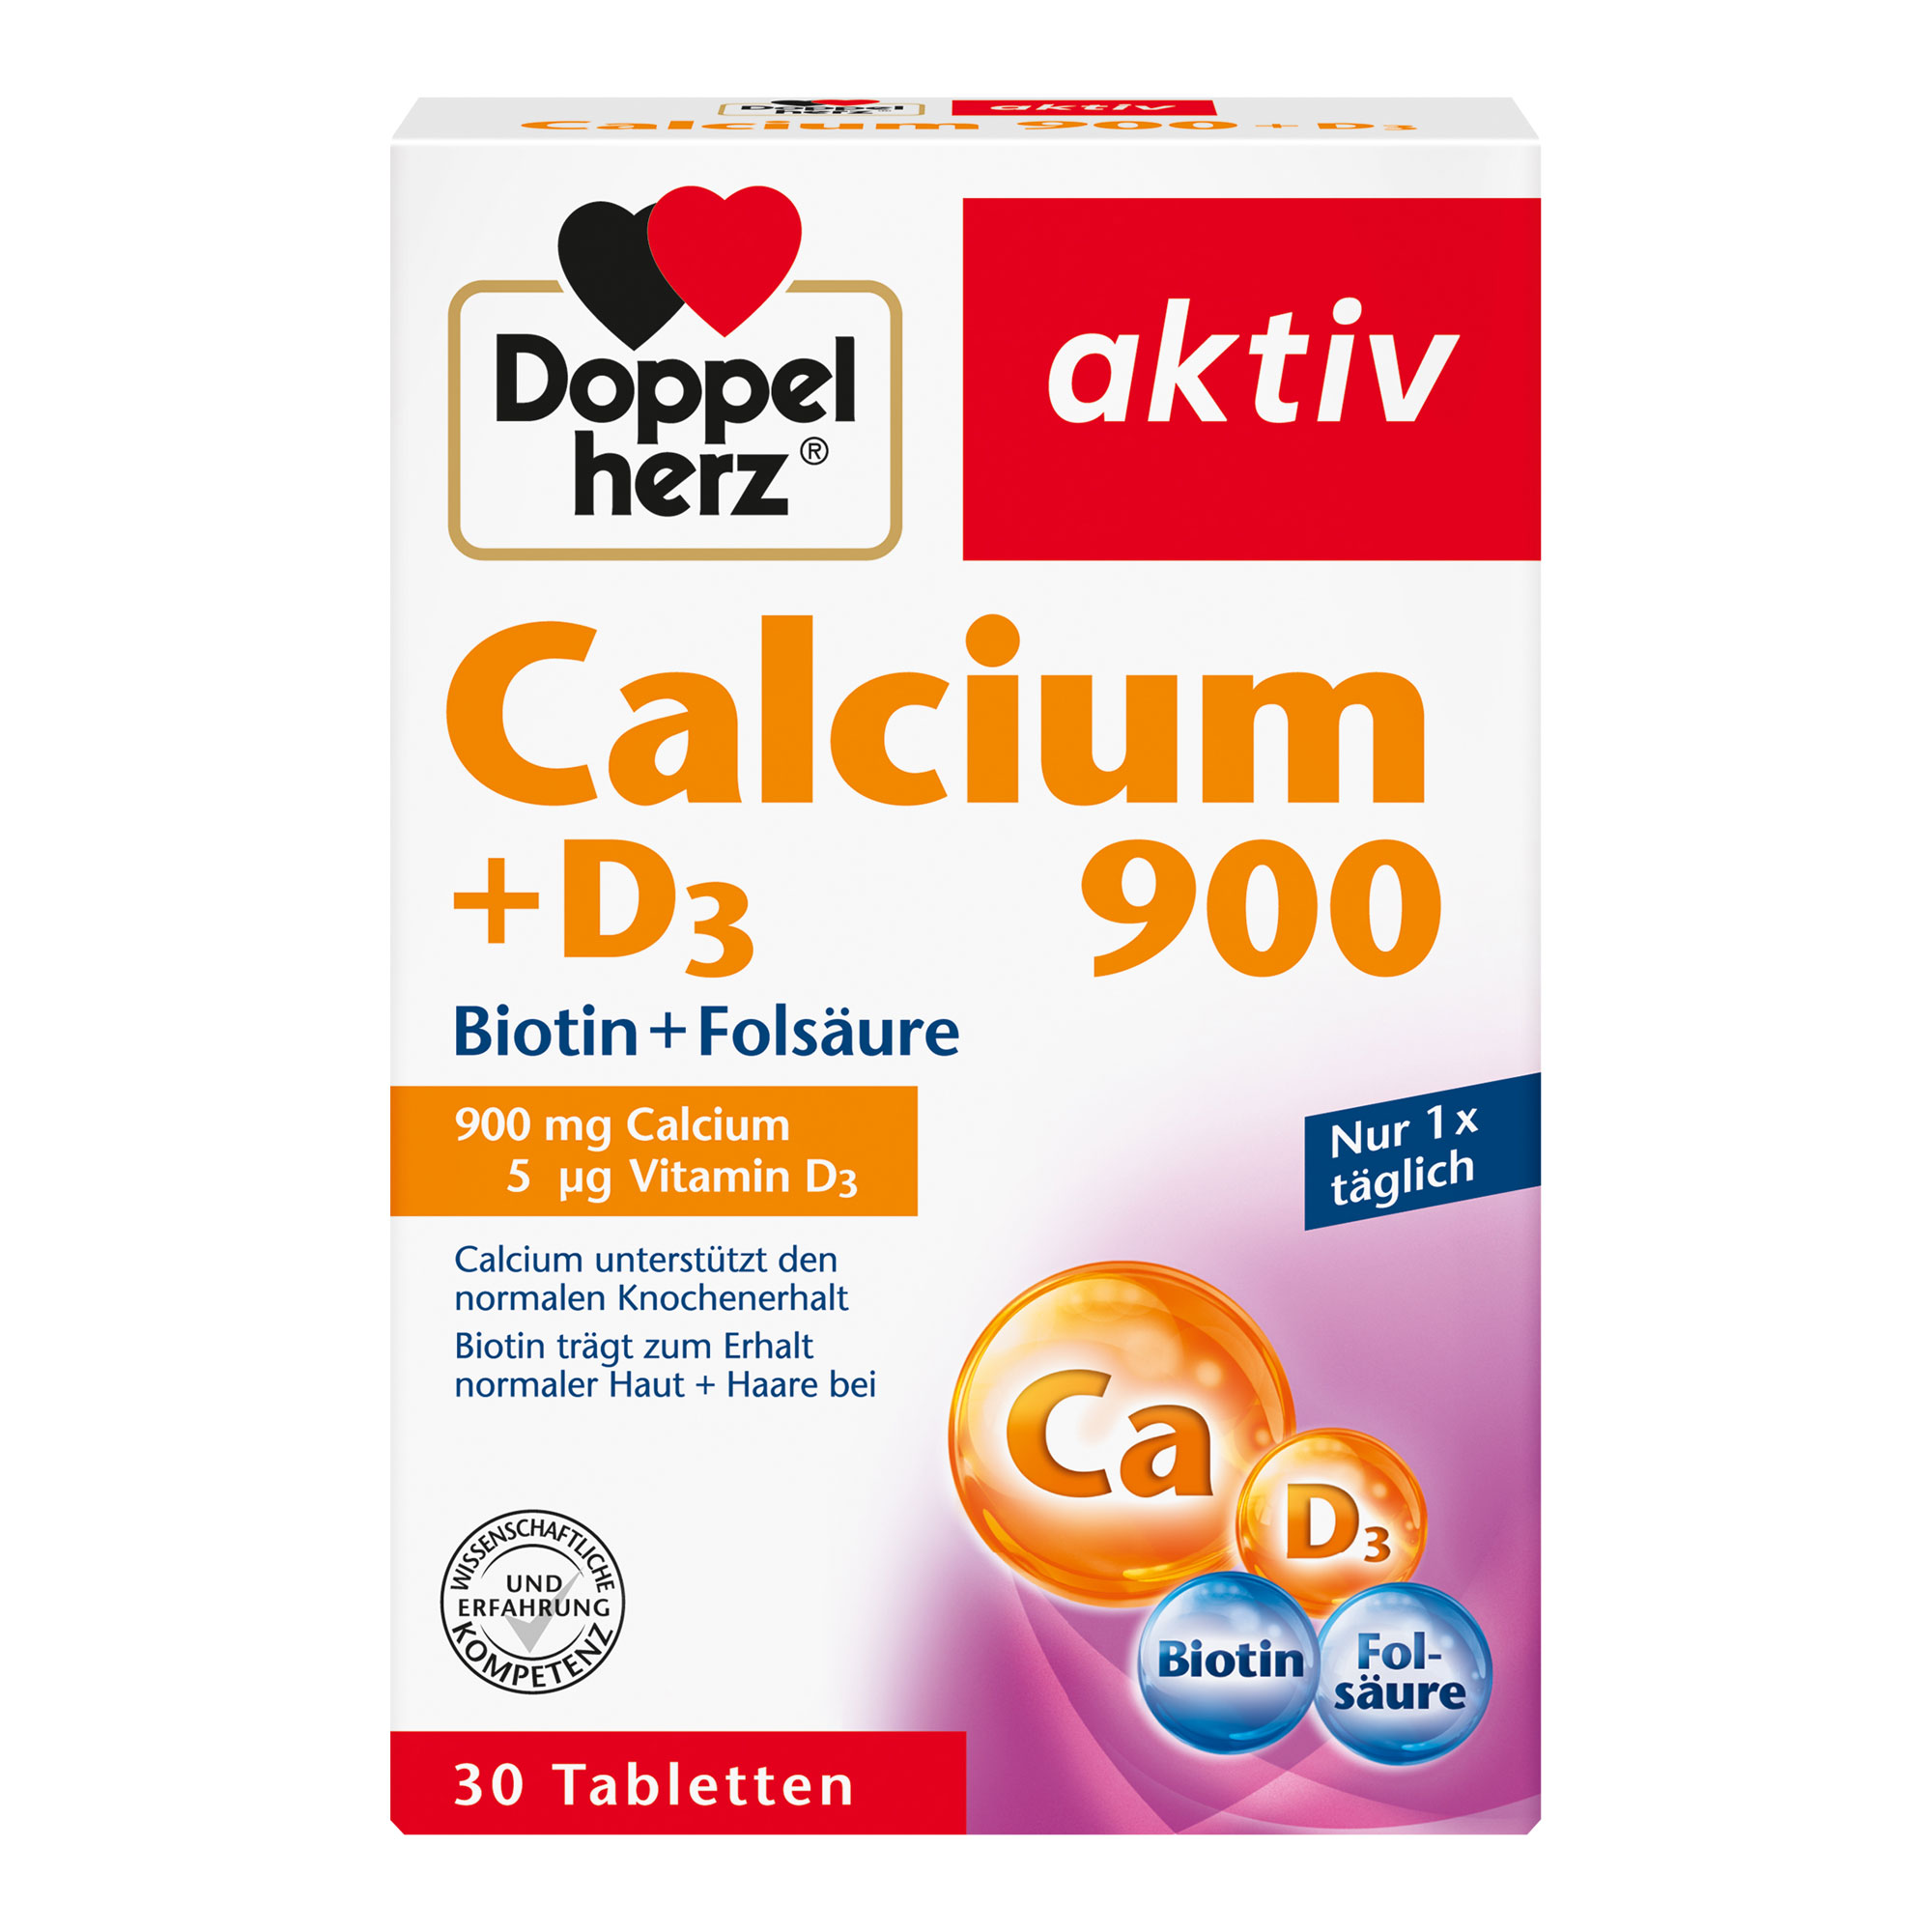 Nahrungsergänzungsmittel mit Calcium, Vitamin D, Folsäure und Biotin.